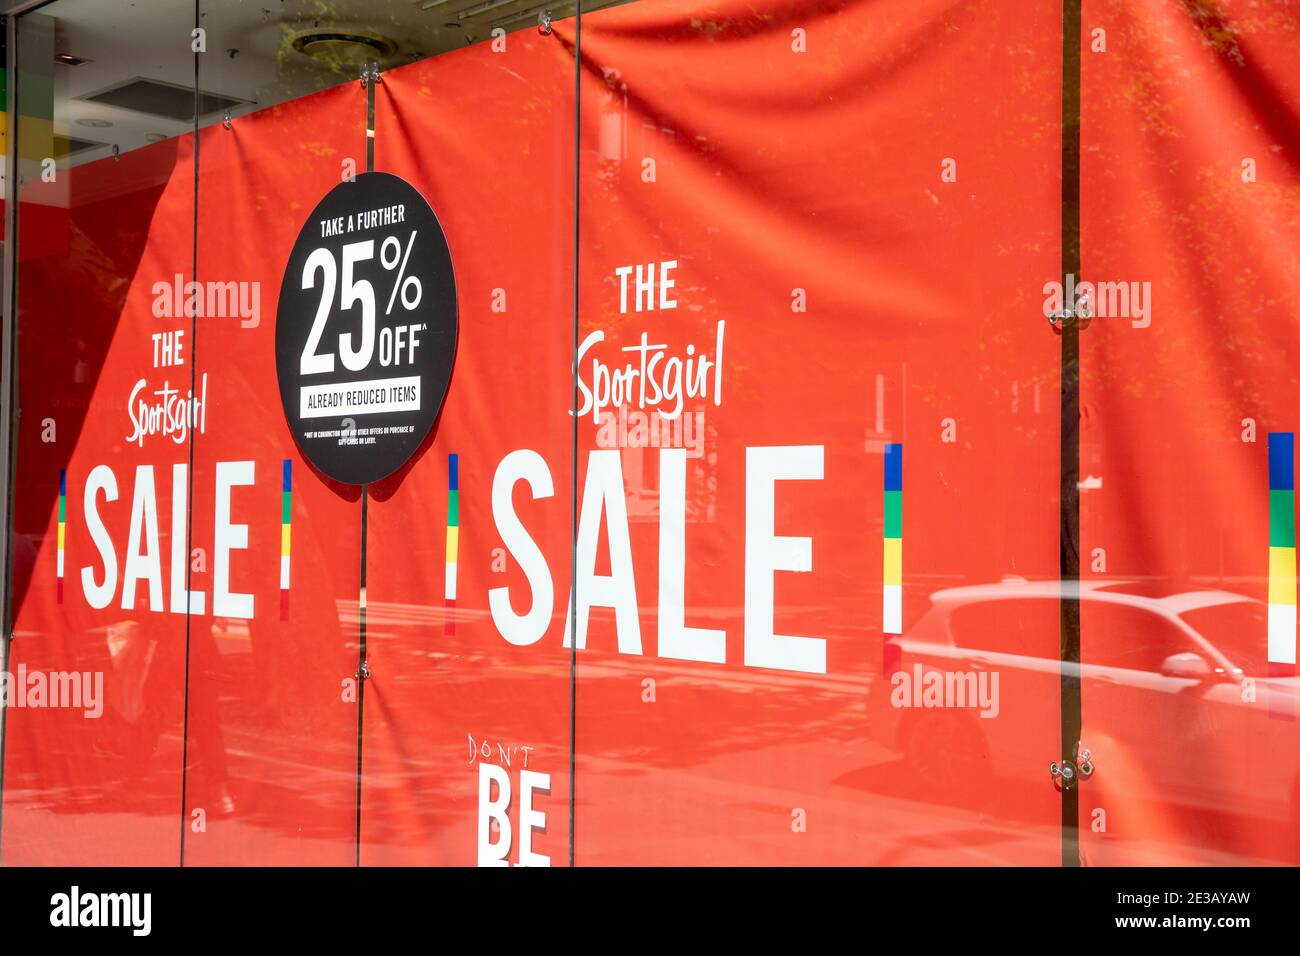 Negozio di abbigliamento Sportsgirl nel centro di Sydney con il 25% OFF nelle vendite di gennaio, Sydney, Australia Foto Stock